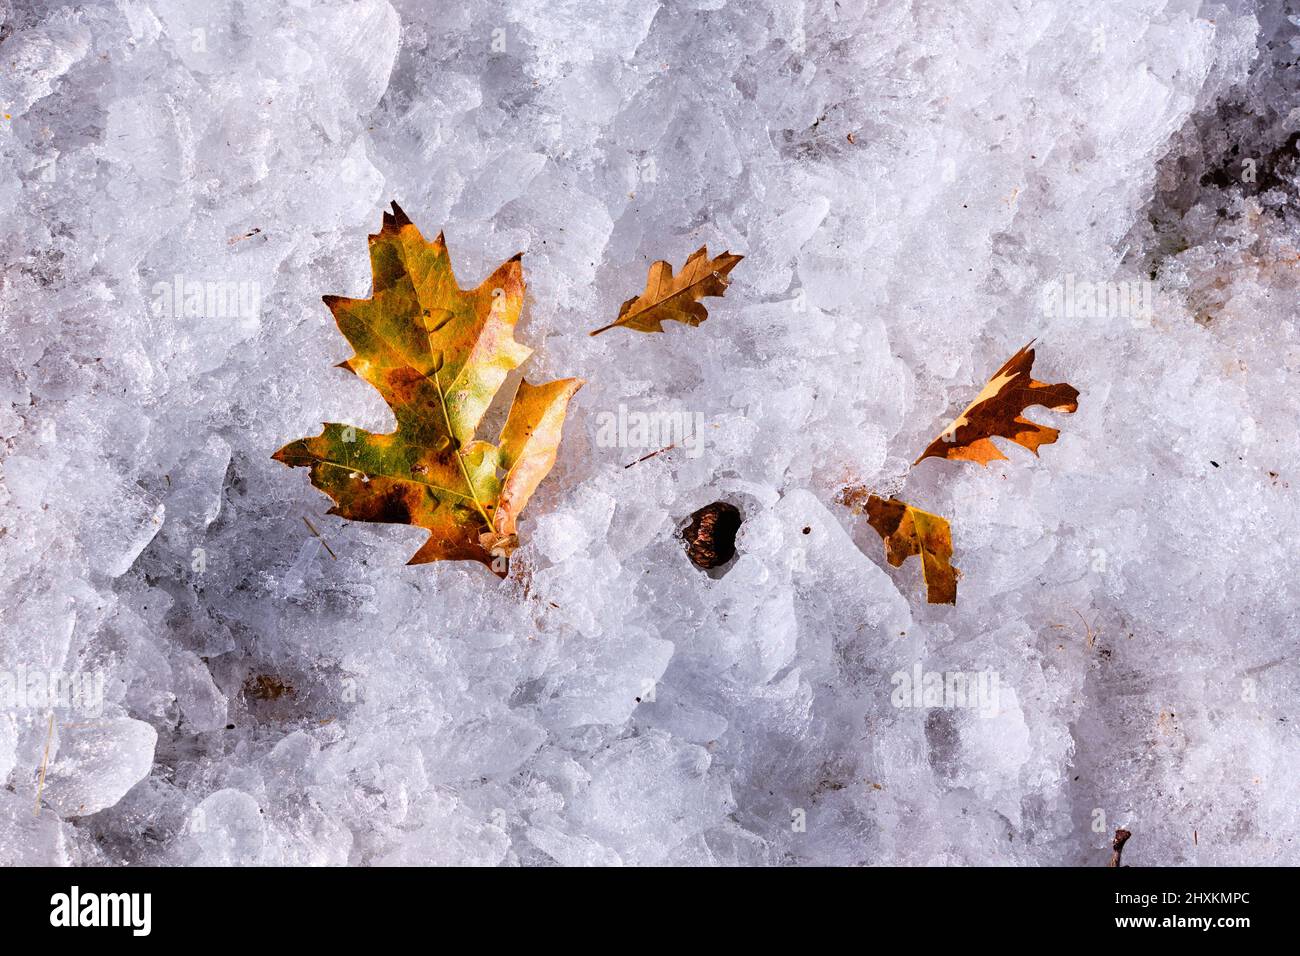 Otoño e invierno: Las hojas de roble negro se tornaron doradas sobre la alfombra congelada de pellets de hielo Foto de stock